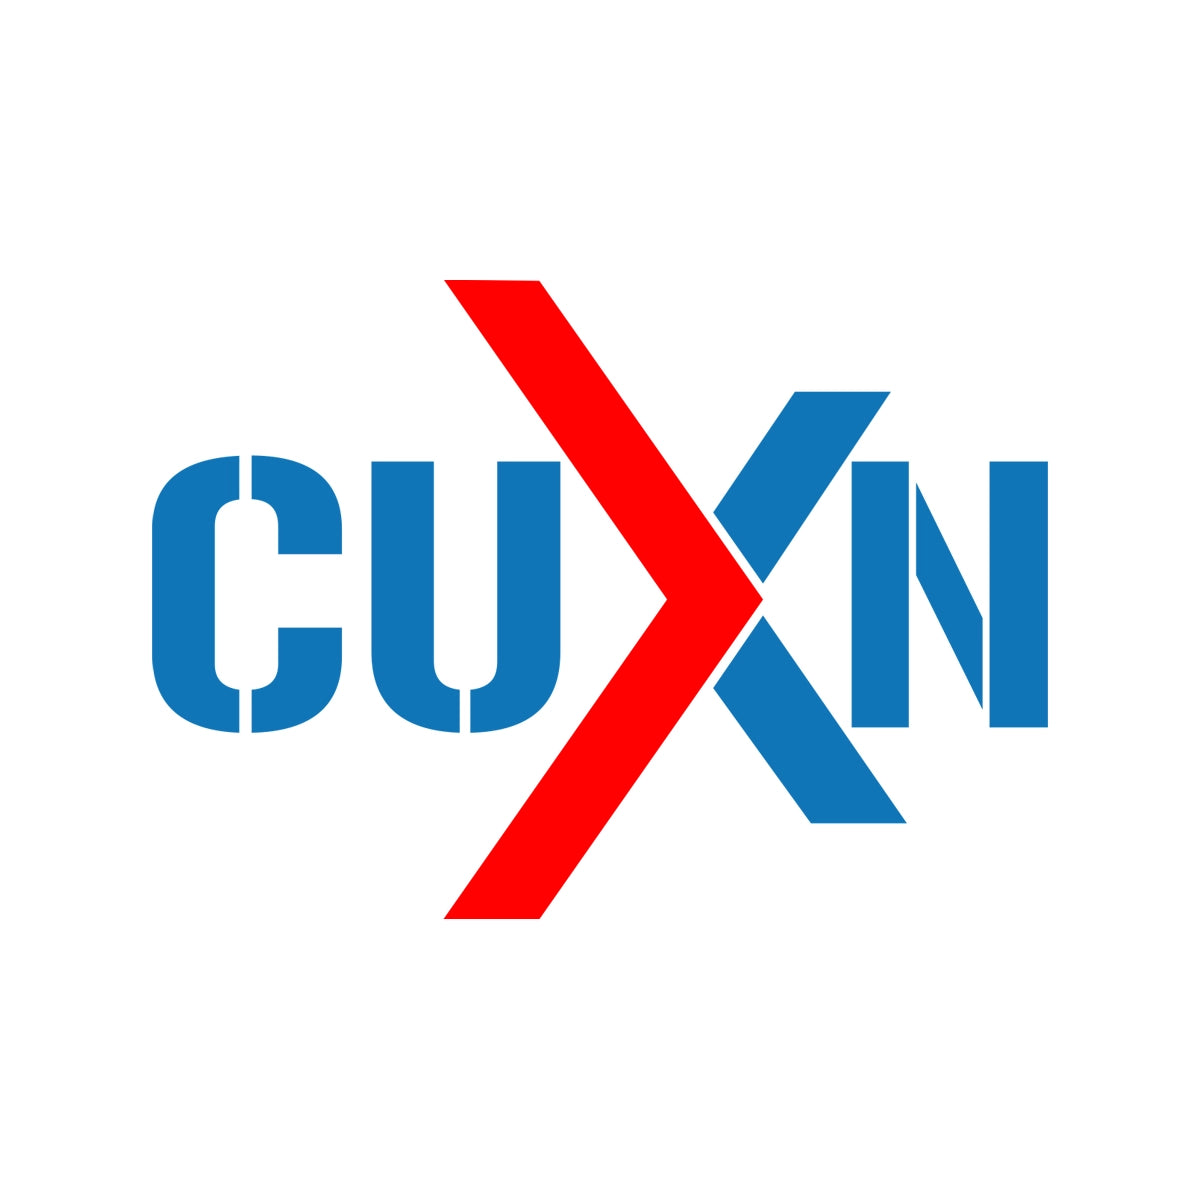 cuxn.com